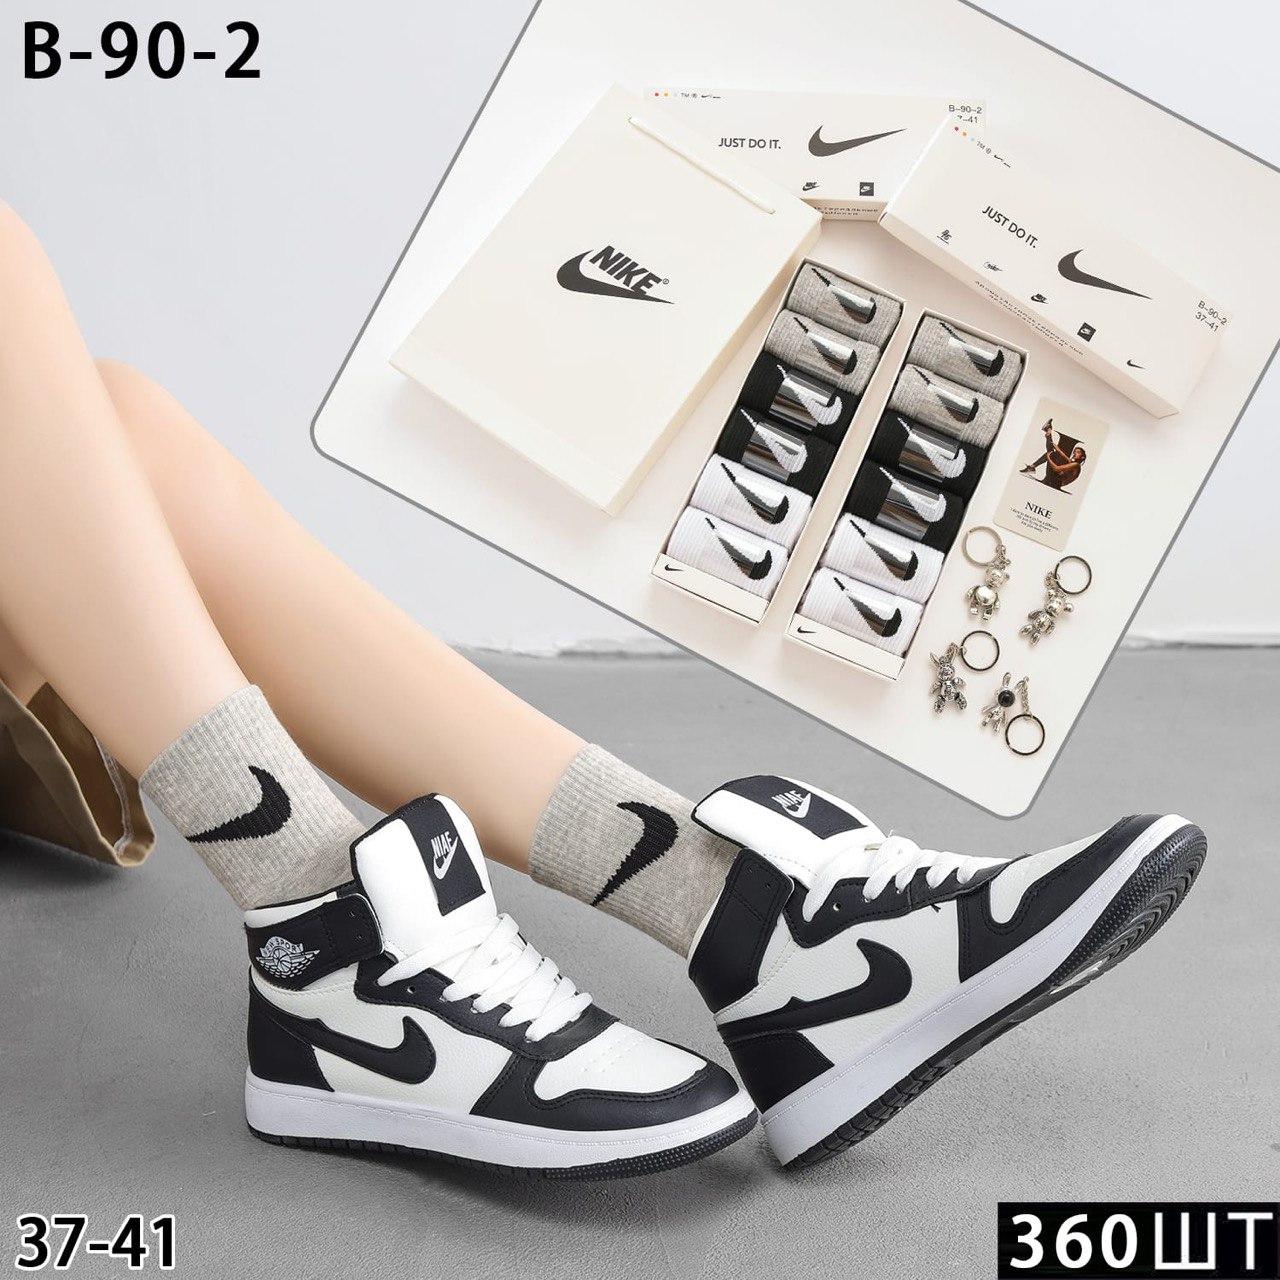 Подарочный набор Женских Носков Nike 37-41 р-р.  высокие (6 пар)